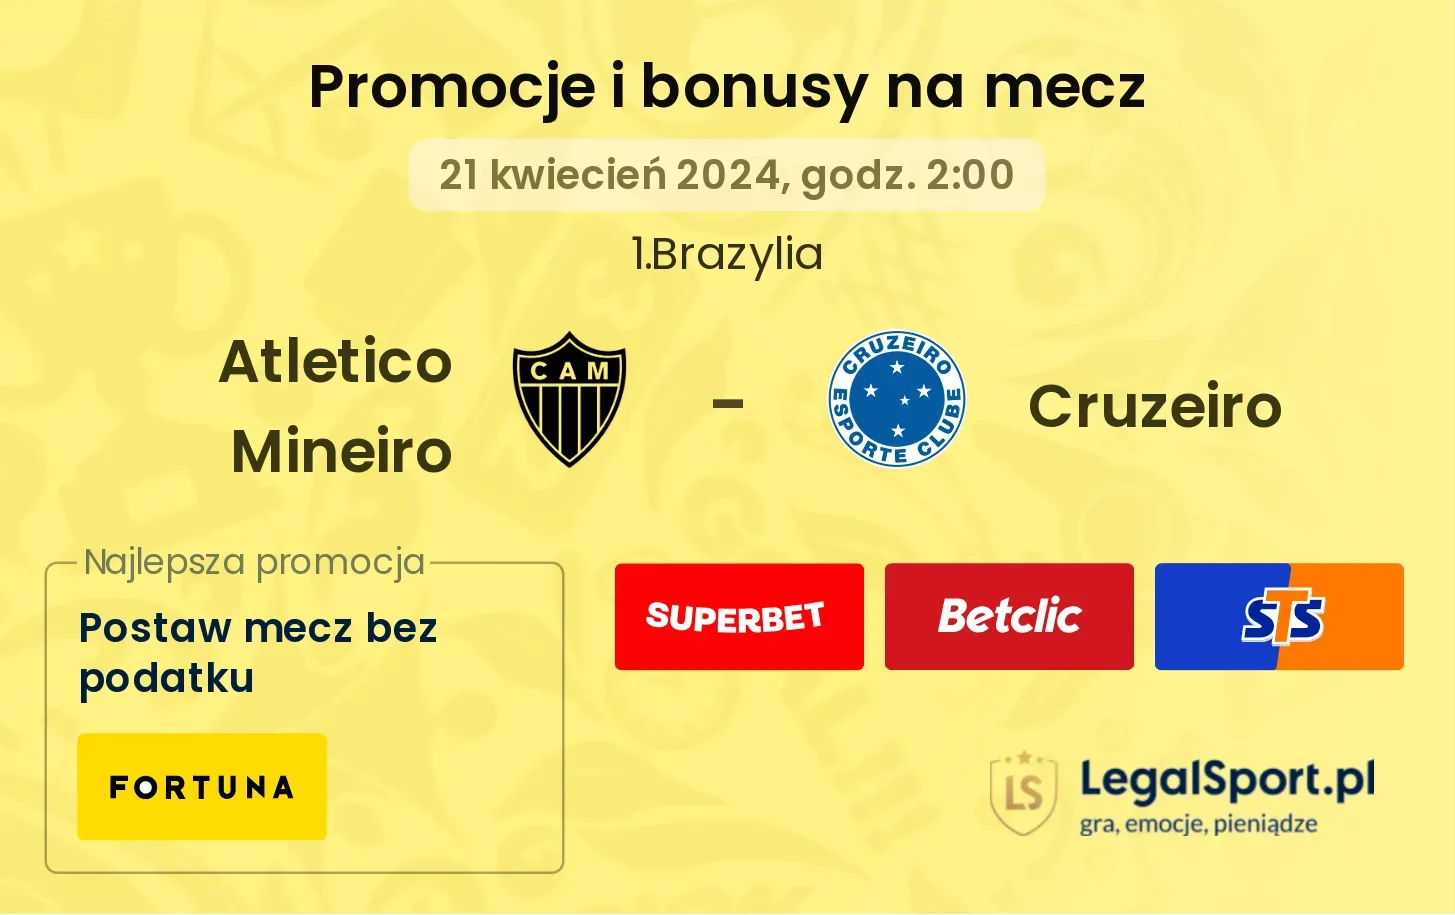 Atletico Mineiro - Cruzeiro promocje bonusy na mecz